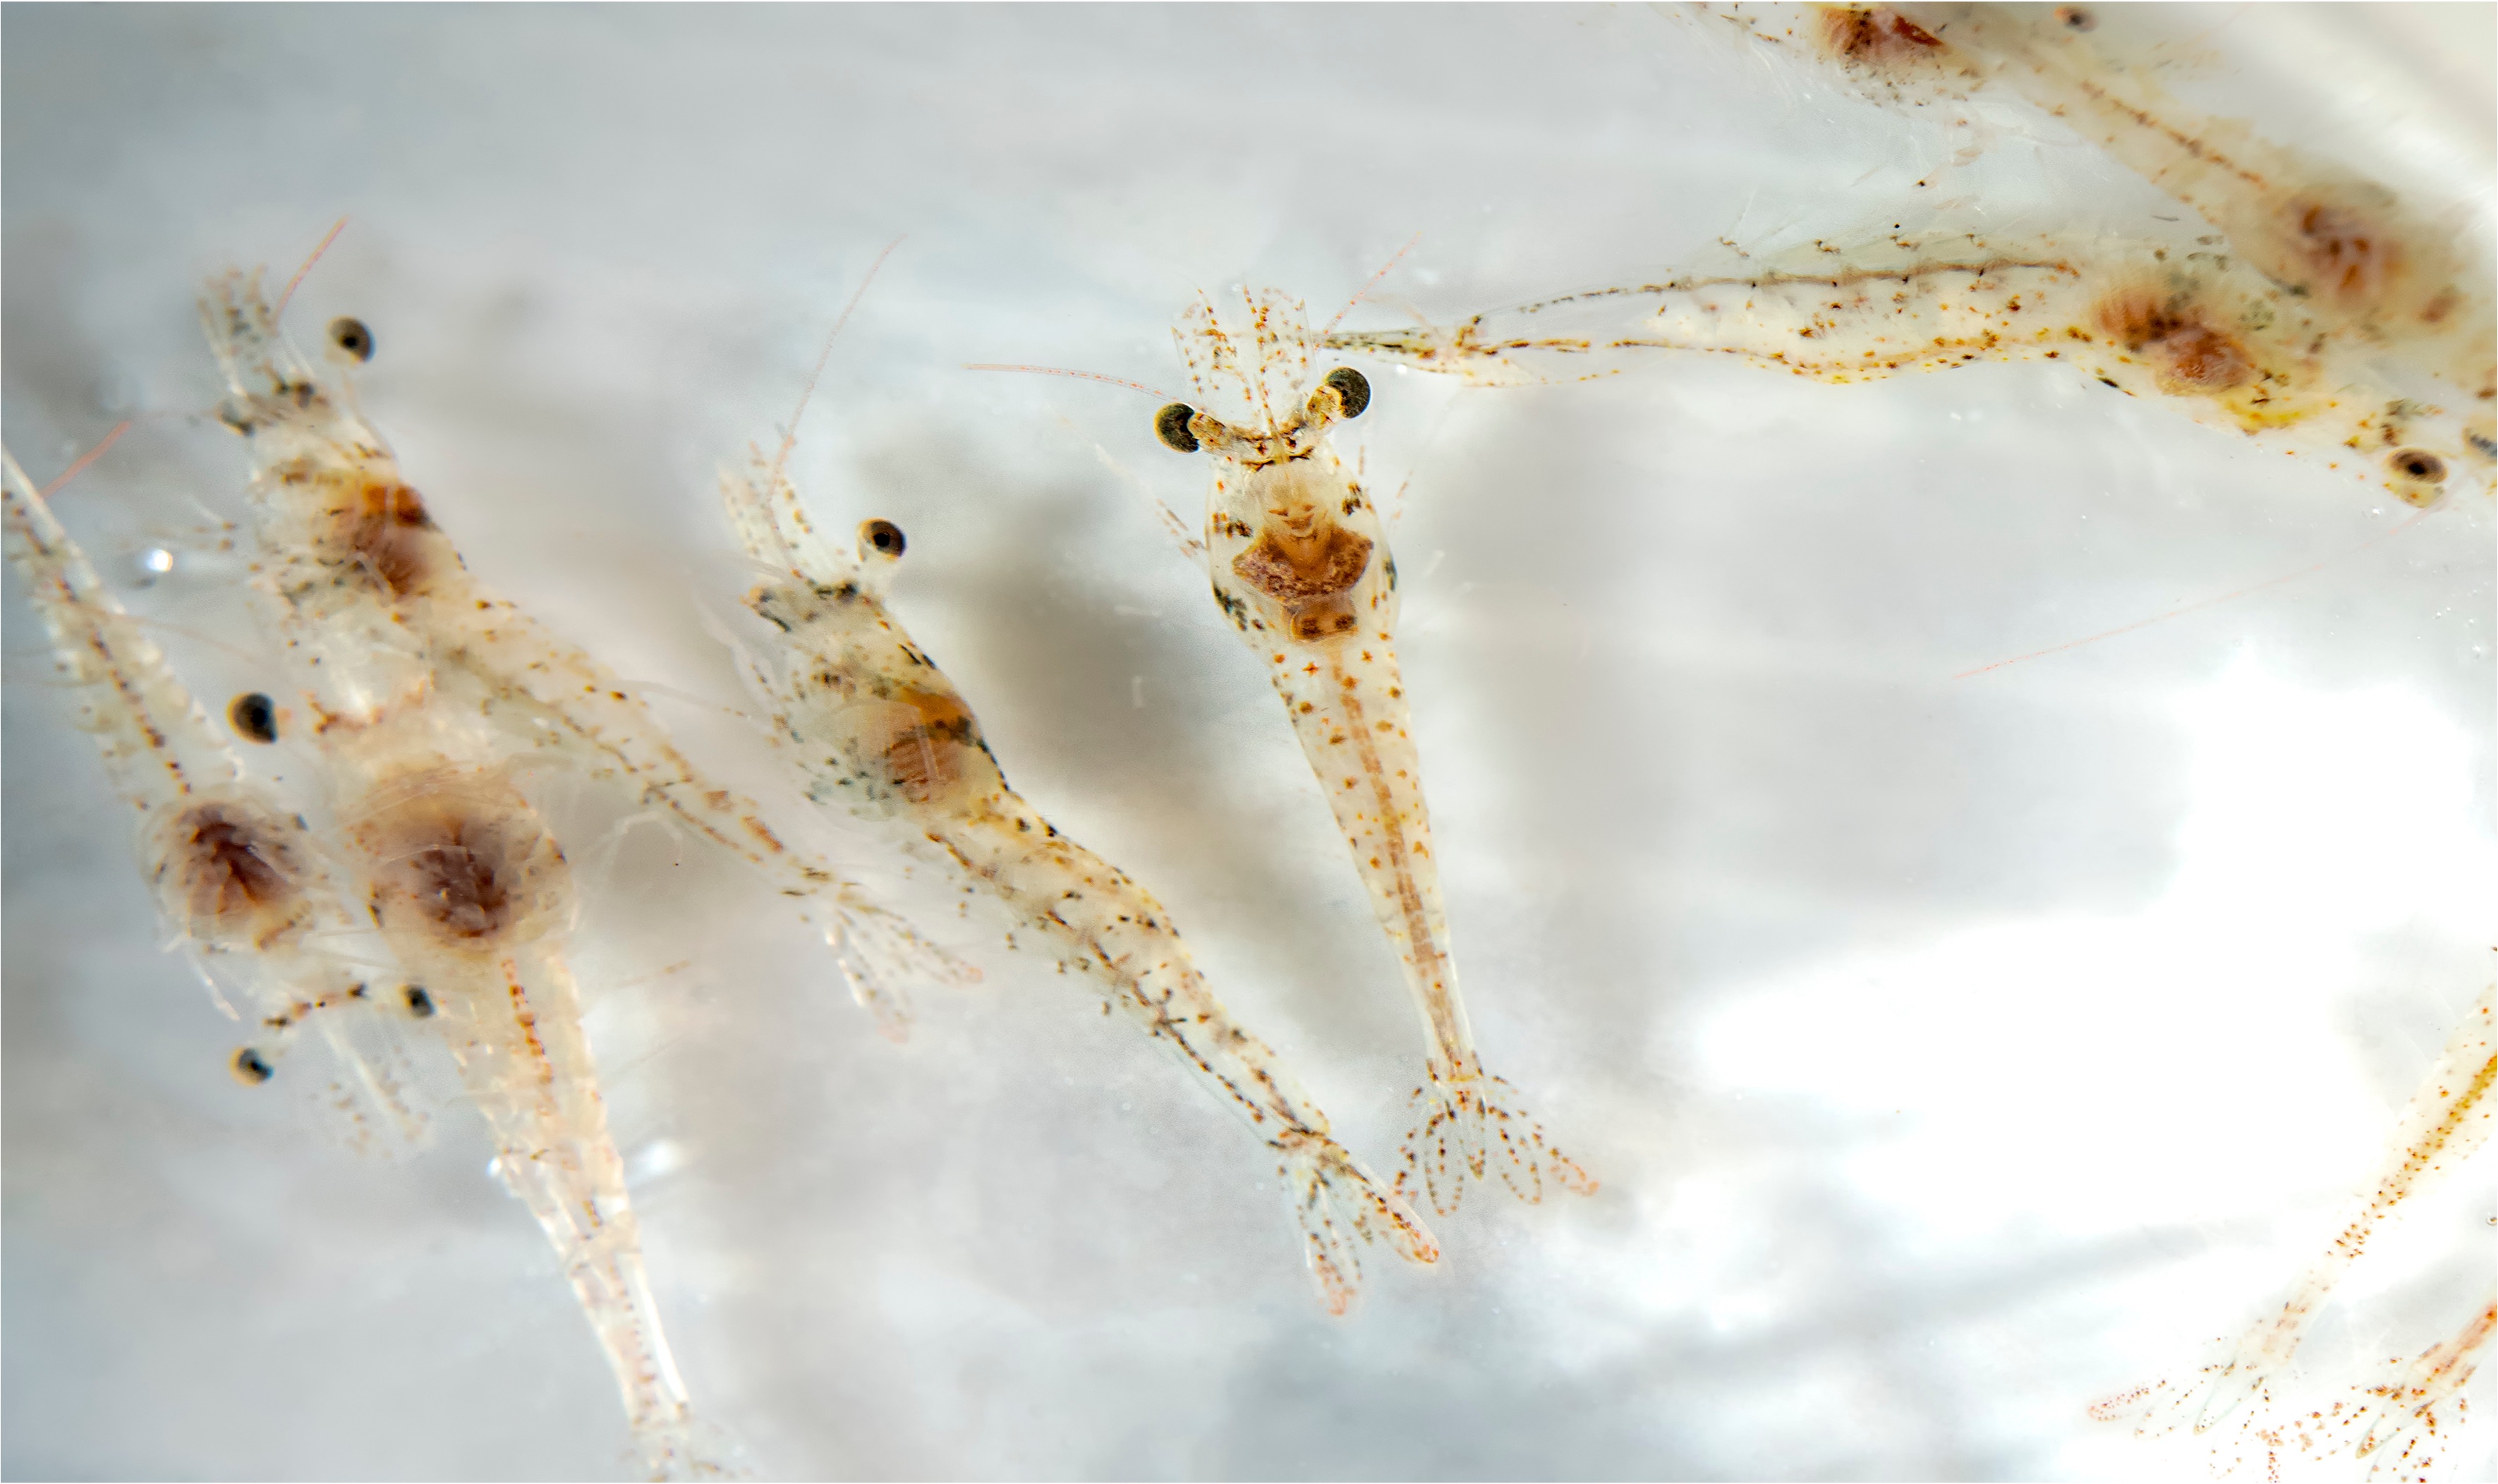 Shrimp Larvae